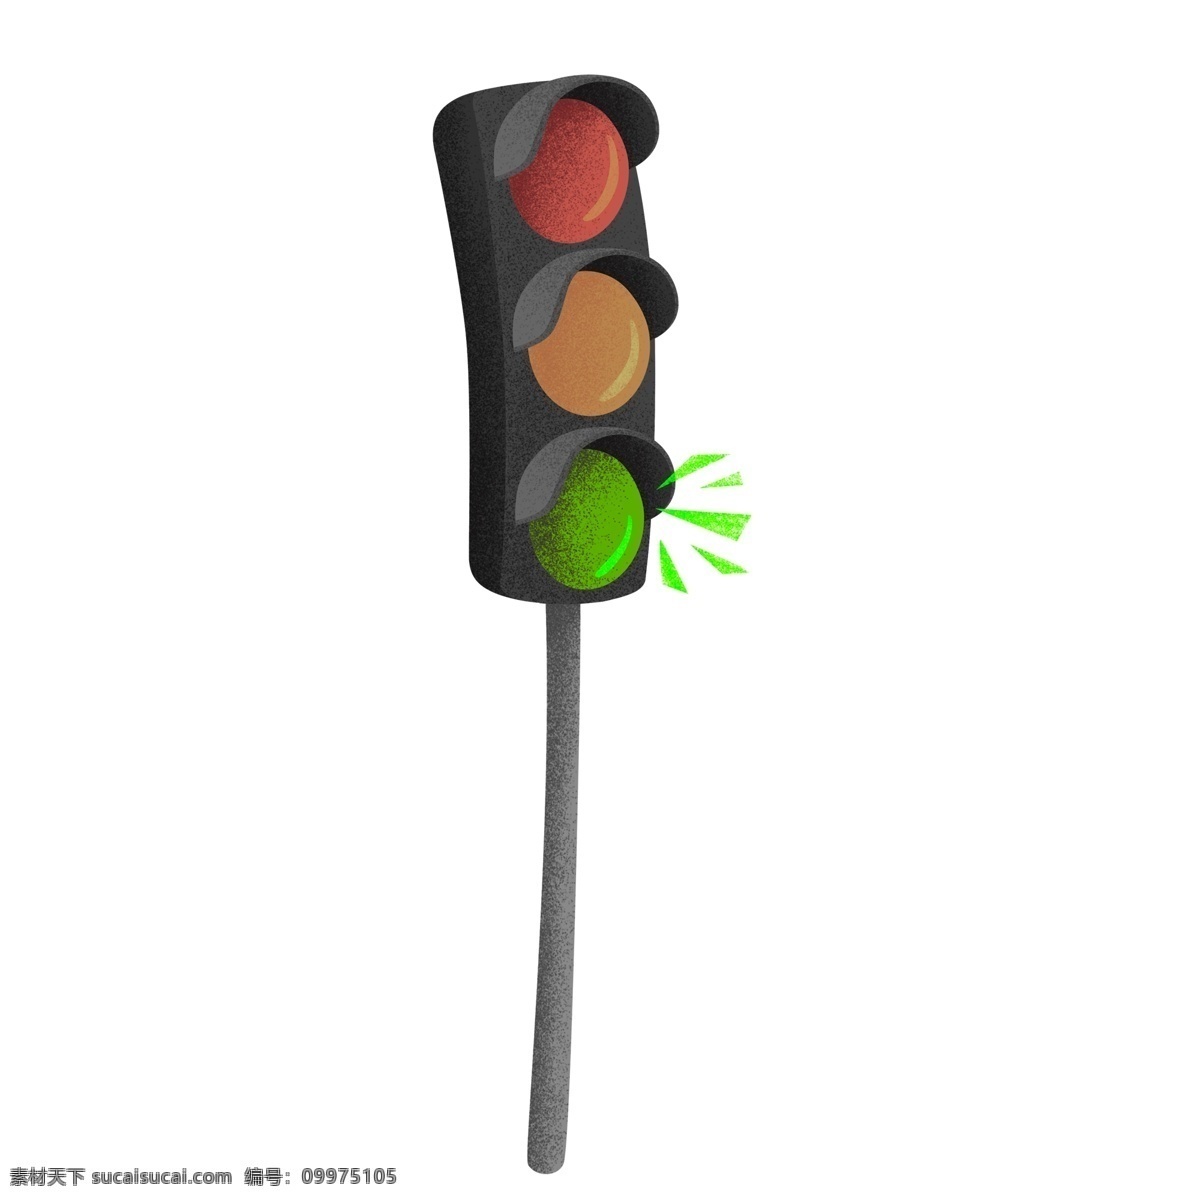 卡通 手绘 交通 红绿灯 元素 插画 创意 交通灯 安全出行 红路灯 交通元素